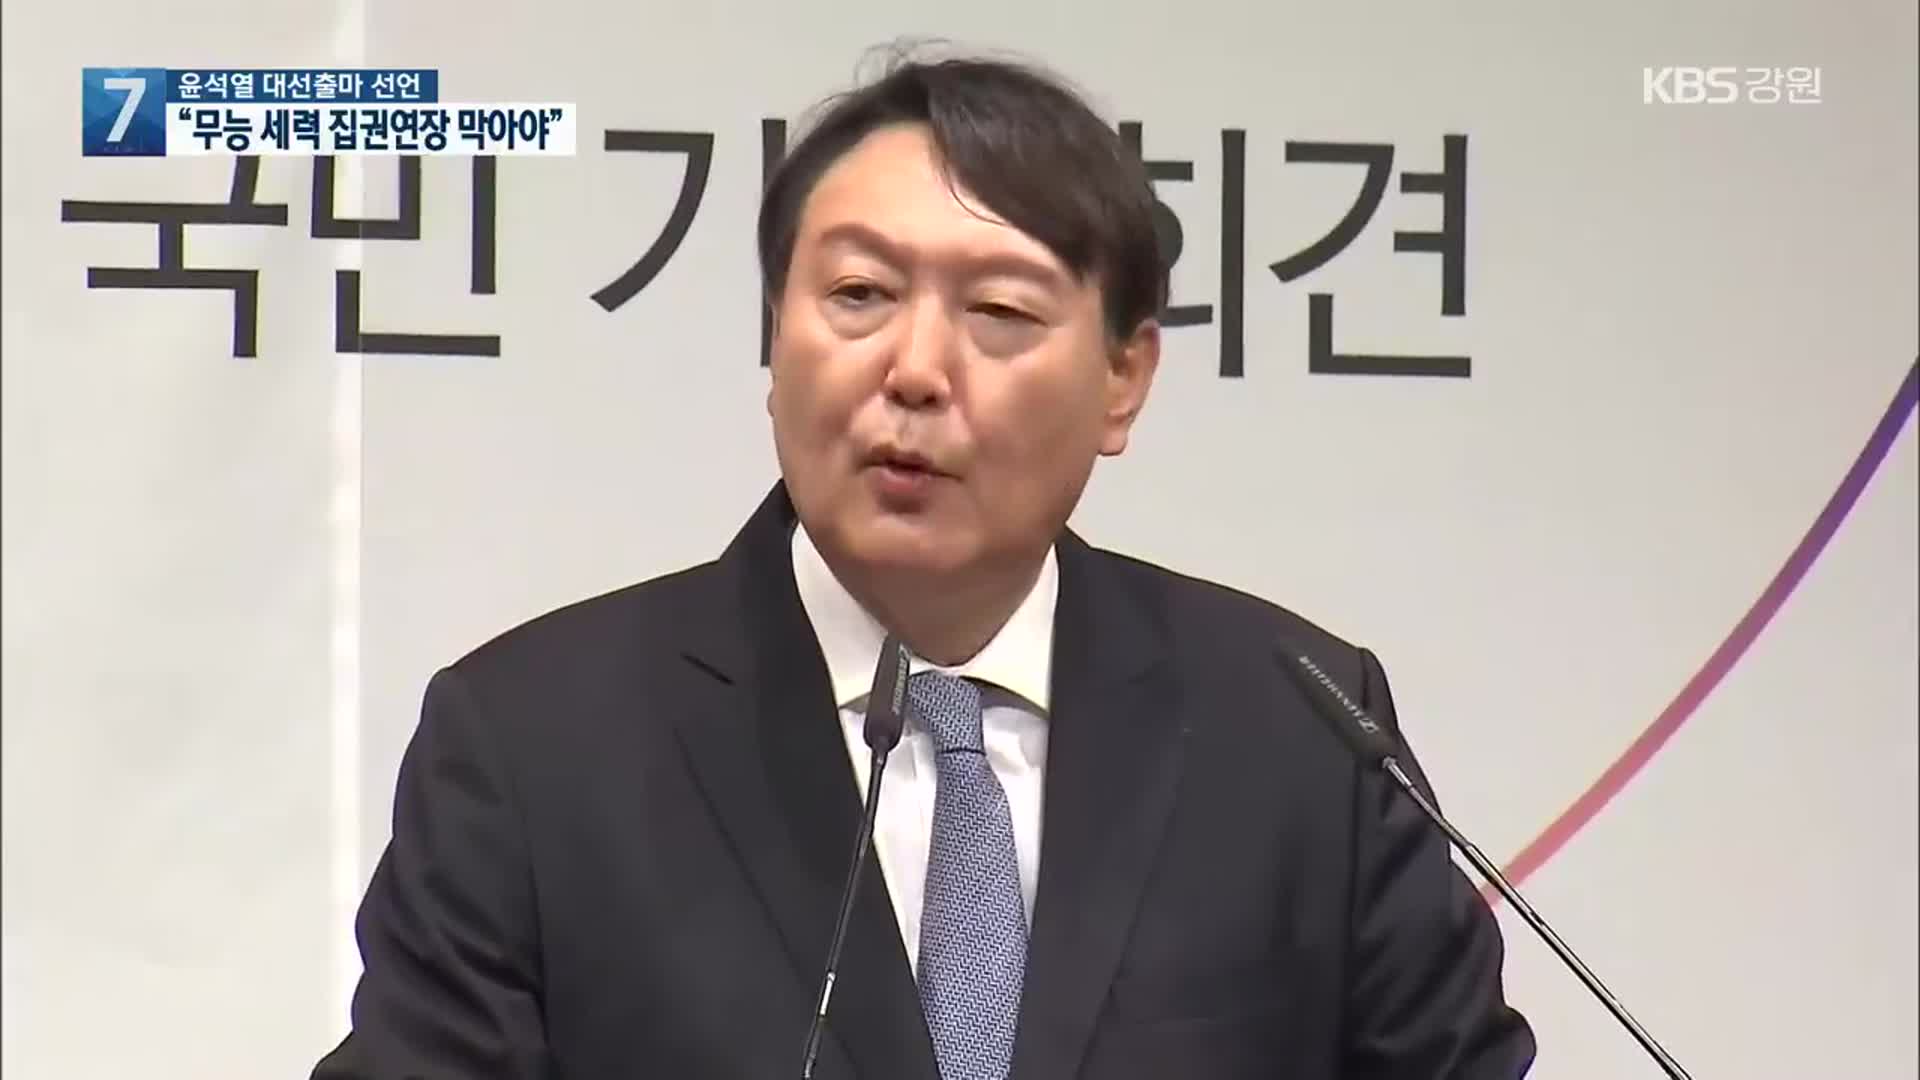 윤석열 대선출마 선언…“무능 세력 집권연장 막아야”